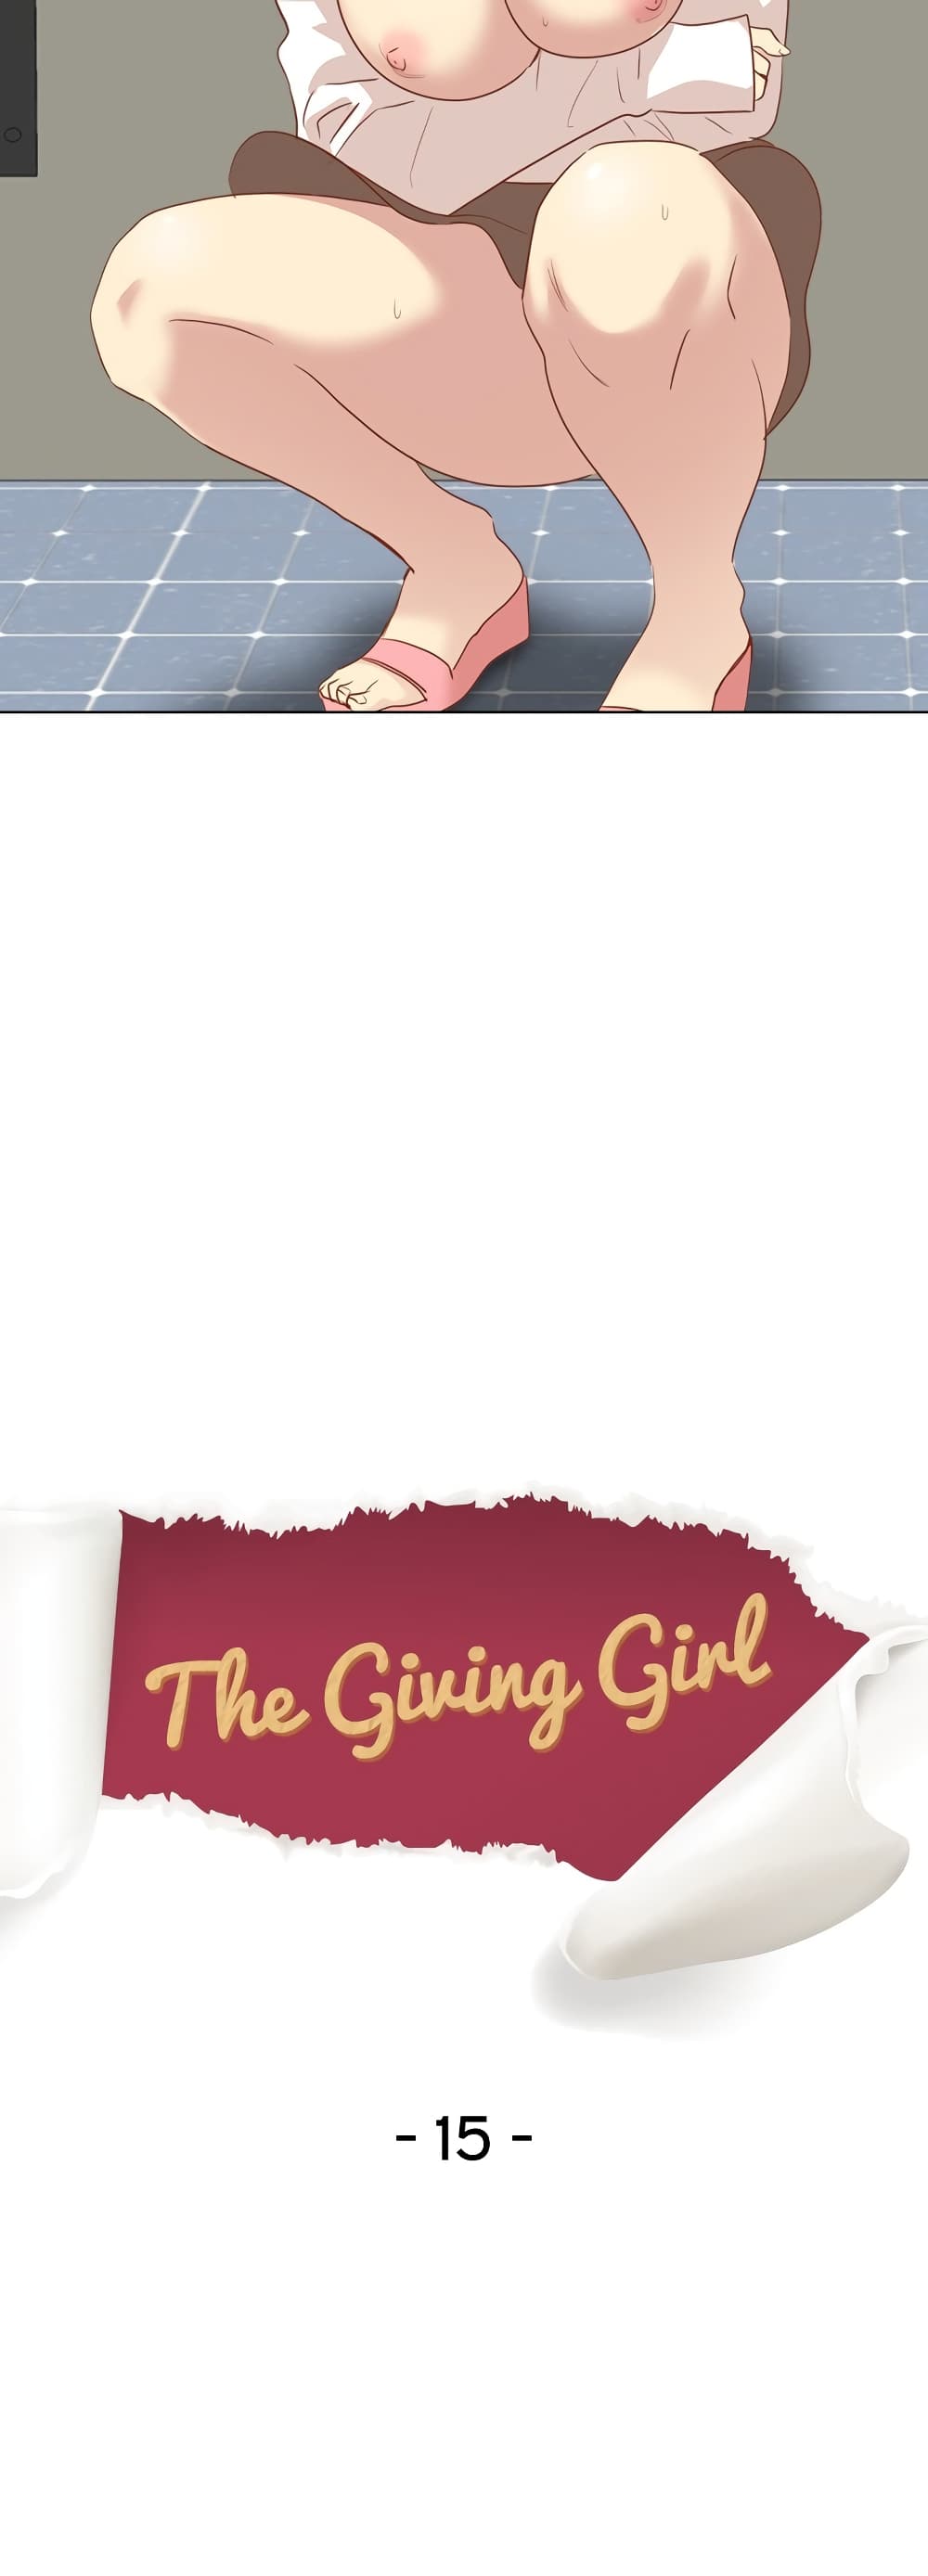 Giving Girl 15 04